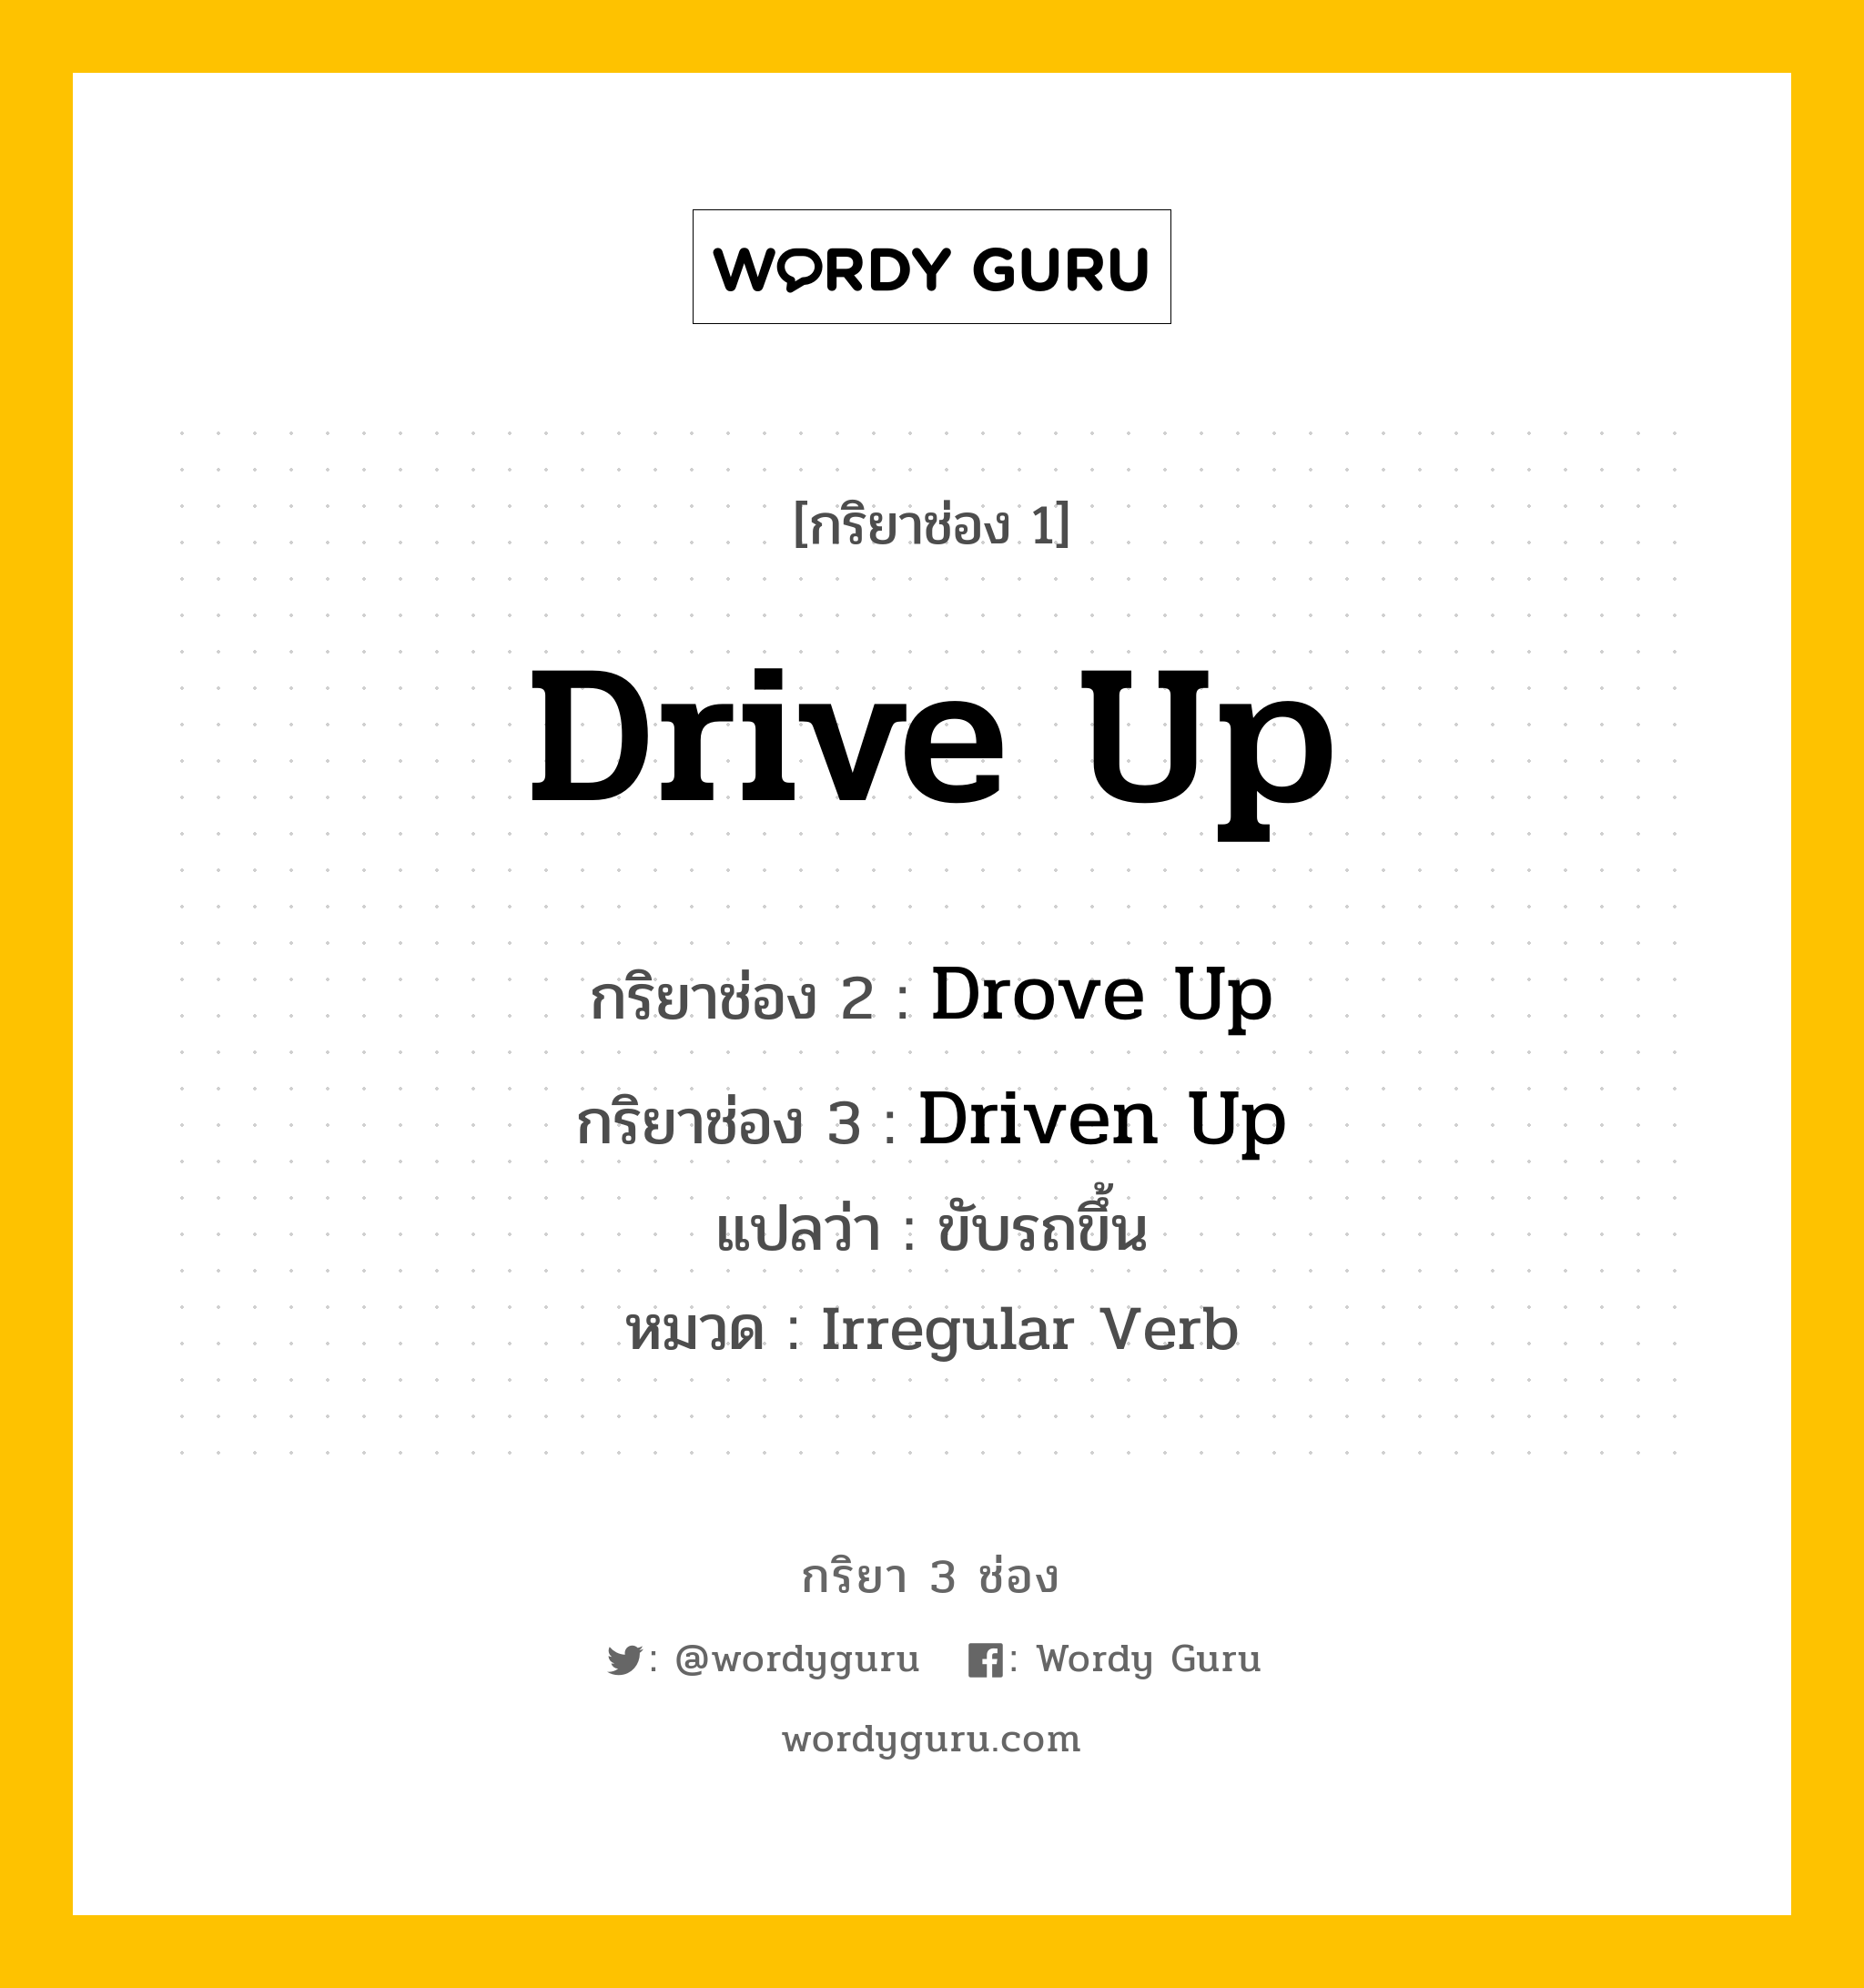 กริยา 3 ช่อง ของ Drive Up คืออะไร? มาดูคำอ่าน คำแปลกันเลย, กริยาช่อง 1 Drive Up กริยาช่อง 2 Drove Up กริยาช่อง 3 Driven Up แปลว่า ขับรถขึ้น หมวด Irregular Verb หมวด Irregular Verb